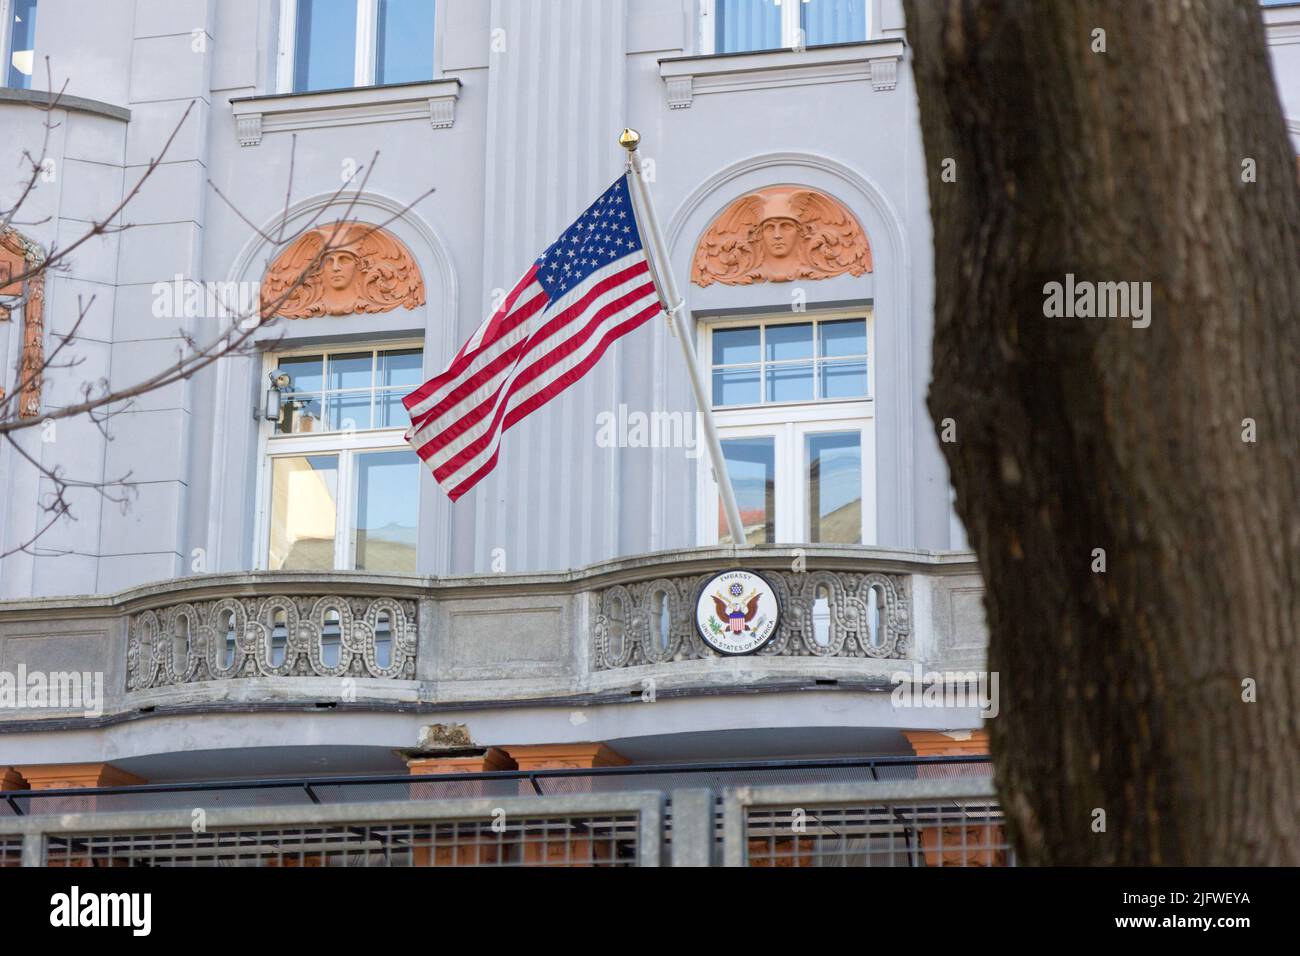 Bratislava, Slowakei. März 8 2017. Die Flagge der Vereinigten Staaten hing auf dem Balkon der US-Botschaft in Hviezdoslavovo námestie in Bratislava, Slowakei. Stockfoto